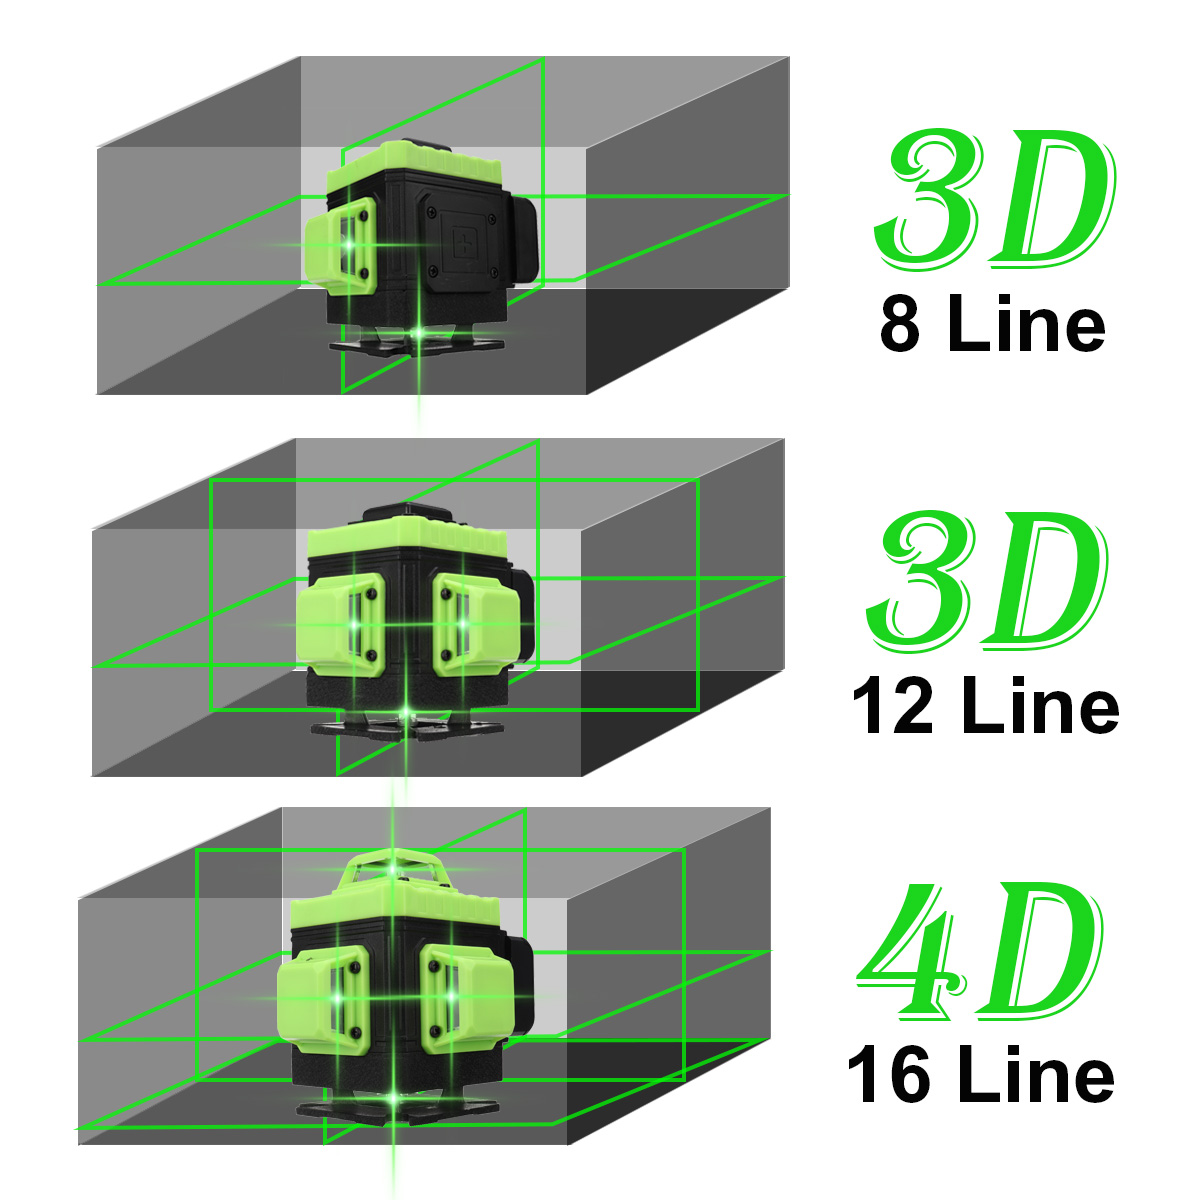 16128-Line-4D-360deg-Horizontal-Vertical-Cross-Green-Light-Laser-Level-Self-Leveling-Measure-APP-Con-1858611-2